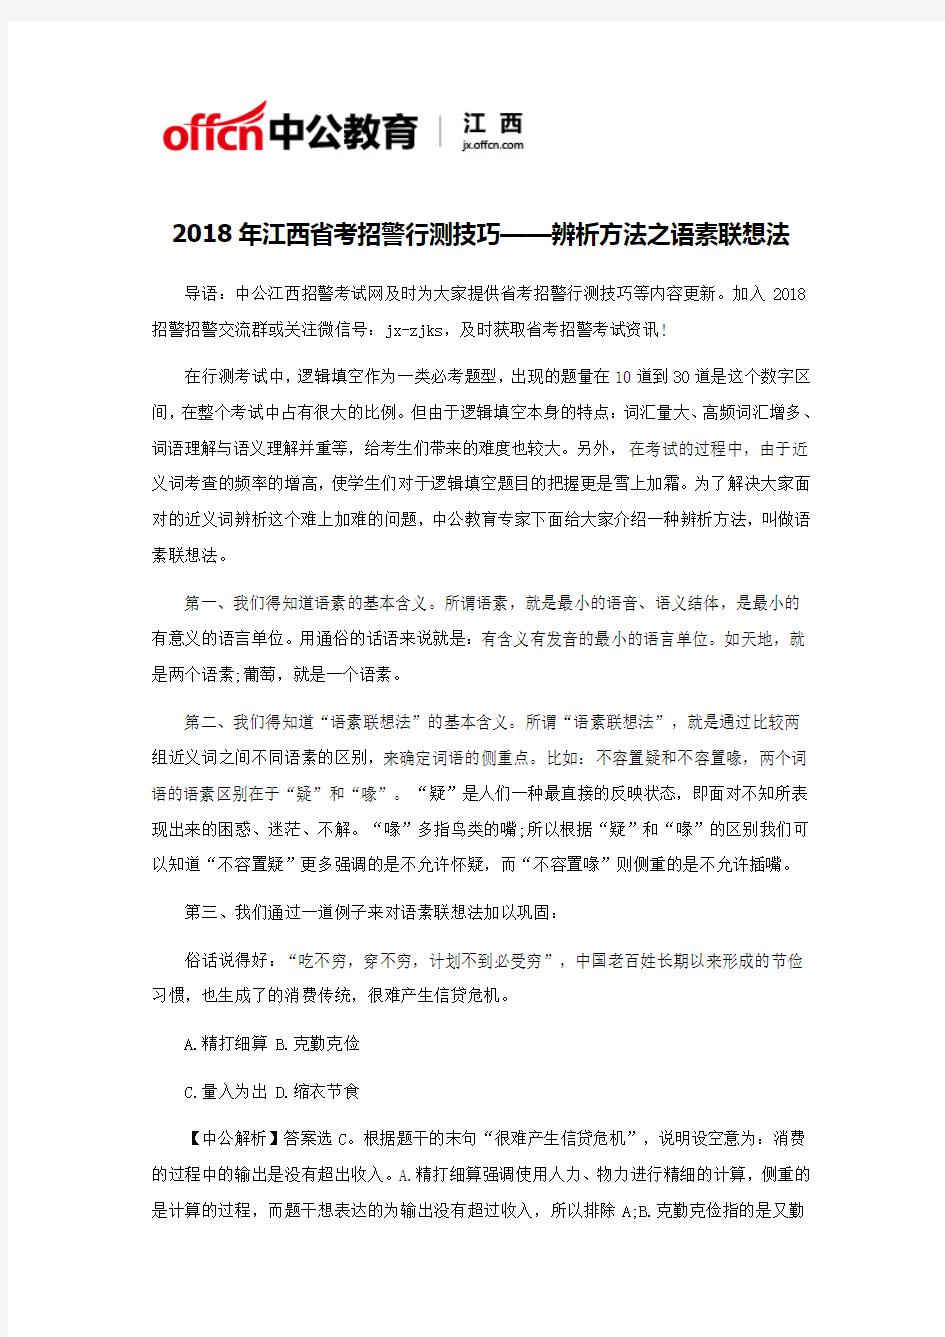 2018年江西省考招警行测技巧——辨析方法之语素联想法